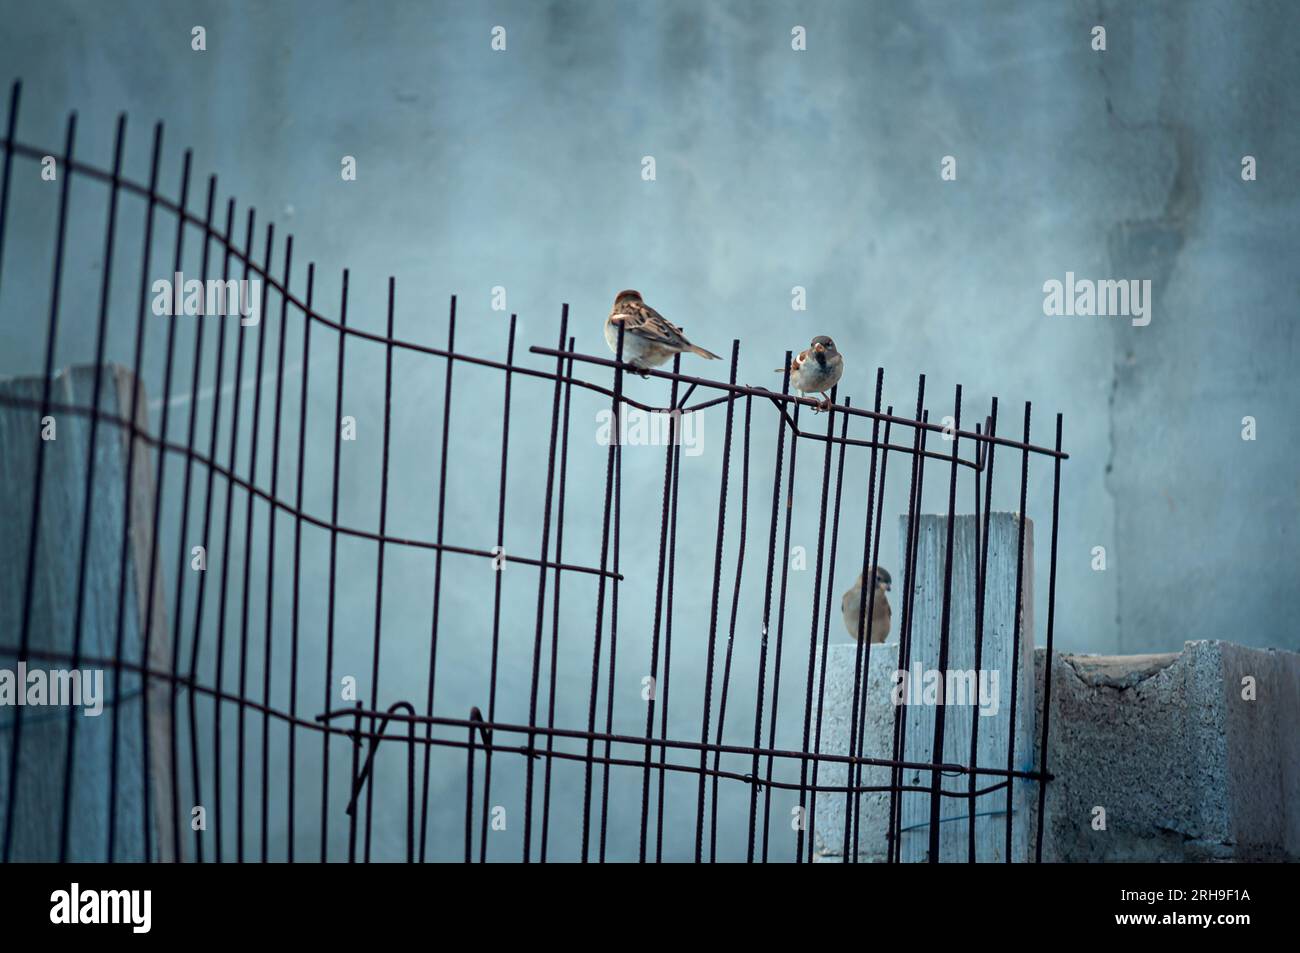 Drei Vögel in einer vergessenen Umgebung, alte Bauwerke verlassen. Vögel, die in der Stadt leben. Moody Imagery. Stockfoto